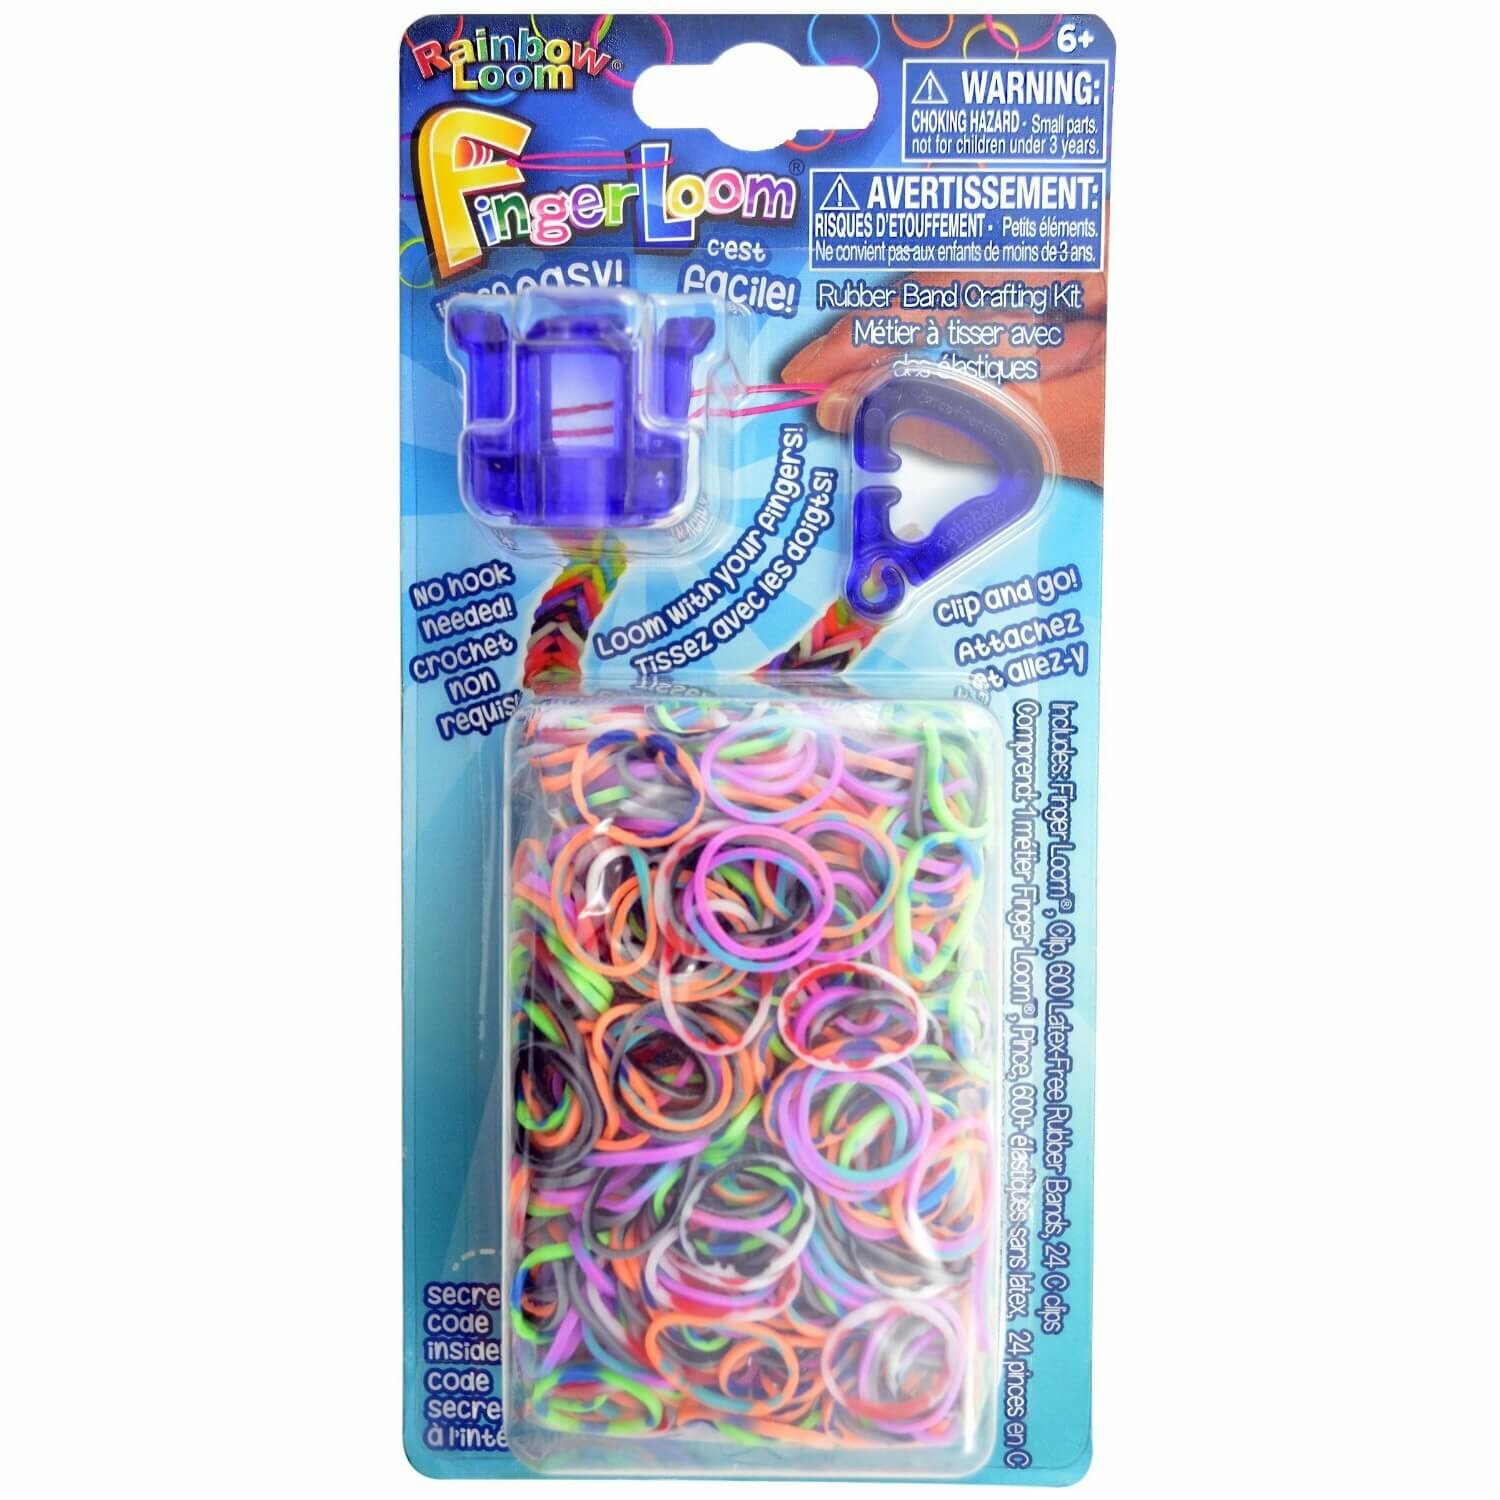 Rainbow Loom Набор для плетения браслетов из резиночек RAINBOW LOOM Finger Loom (Фингер Лум), фиолетовый R0040B